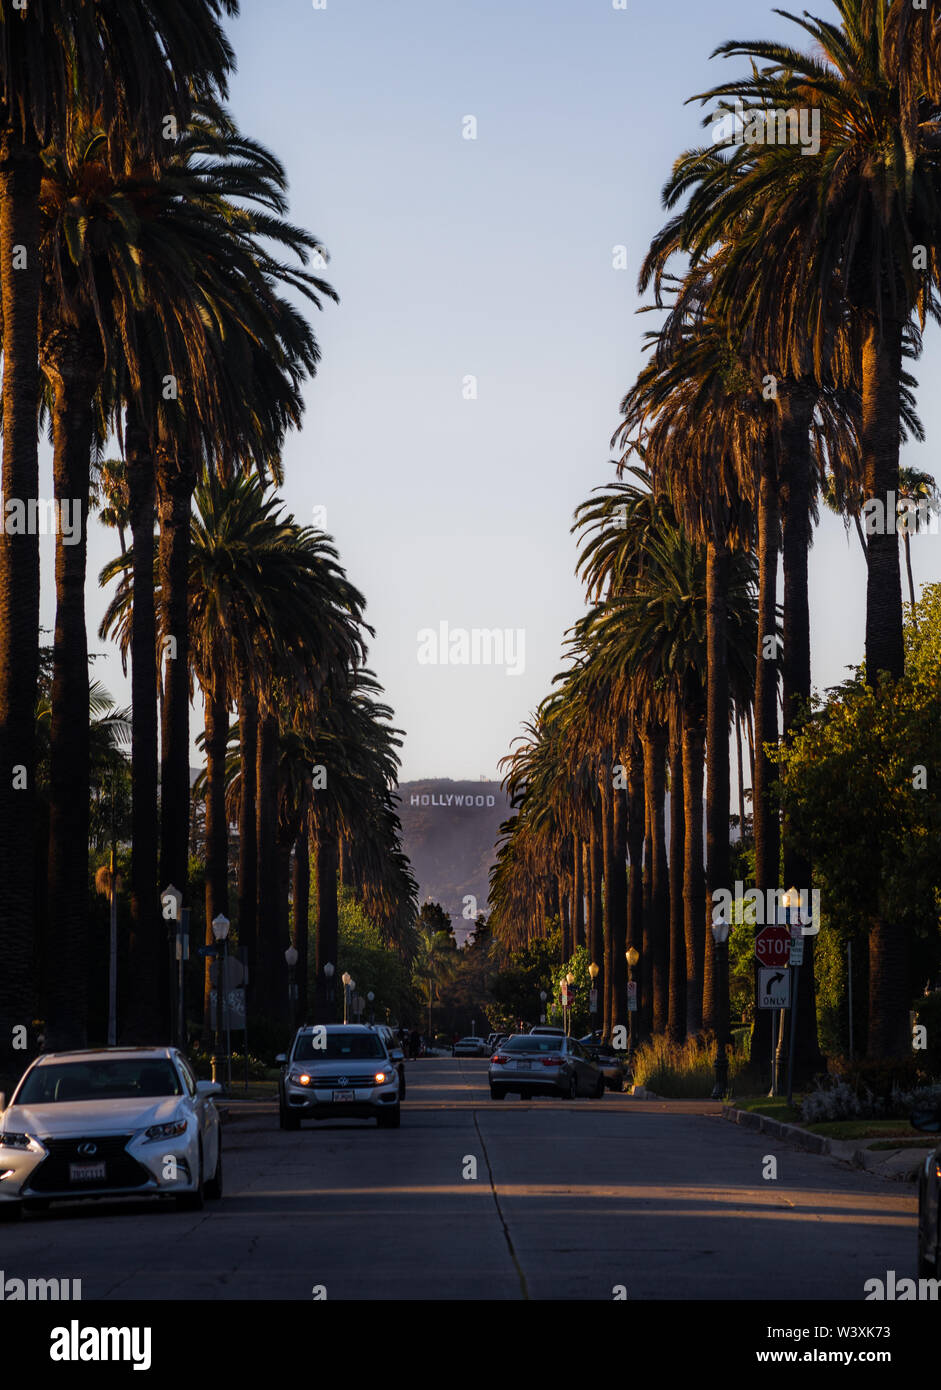 Letrero de Hollywood visto desde una carretera con palmeras en ambos lados en los Angeles California USA Foto de stock